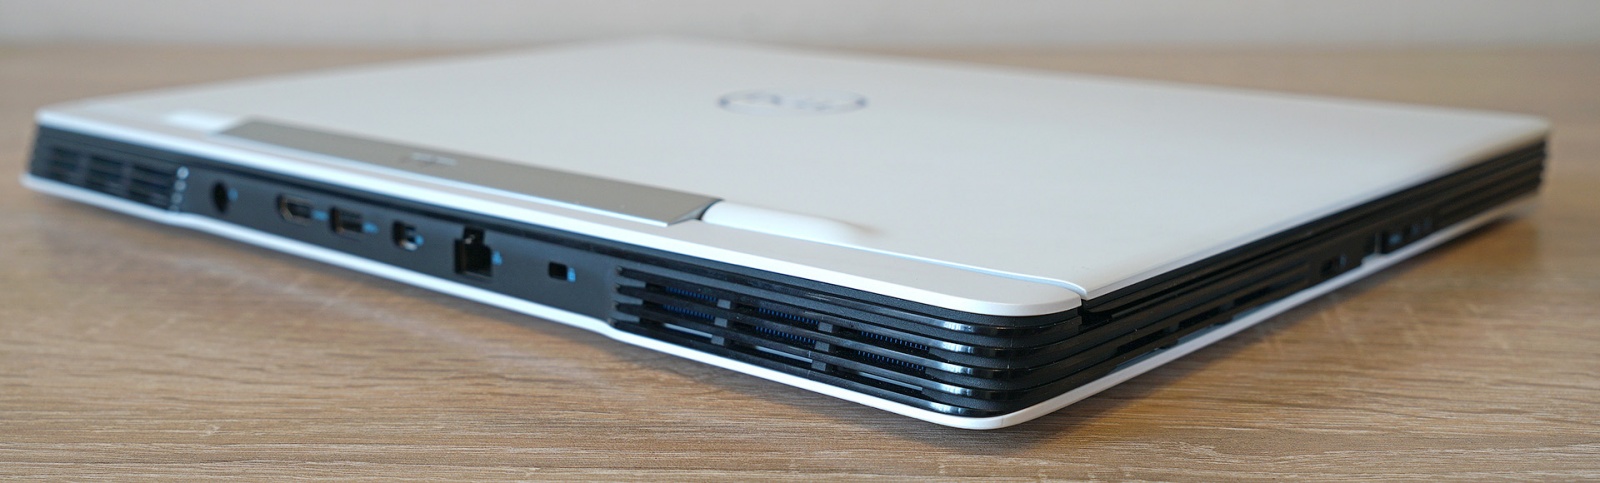 Dell G5 5590: один из самых доступных игровых ноутбуков с RTX 2060 - 8